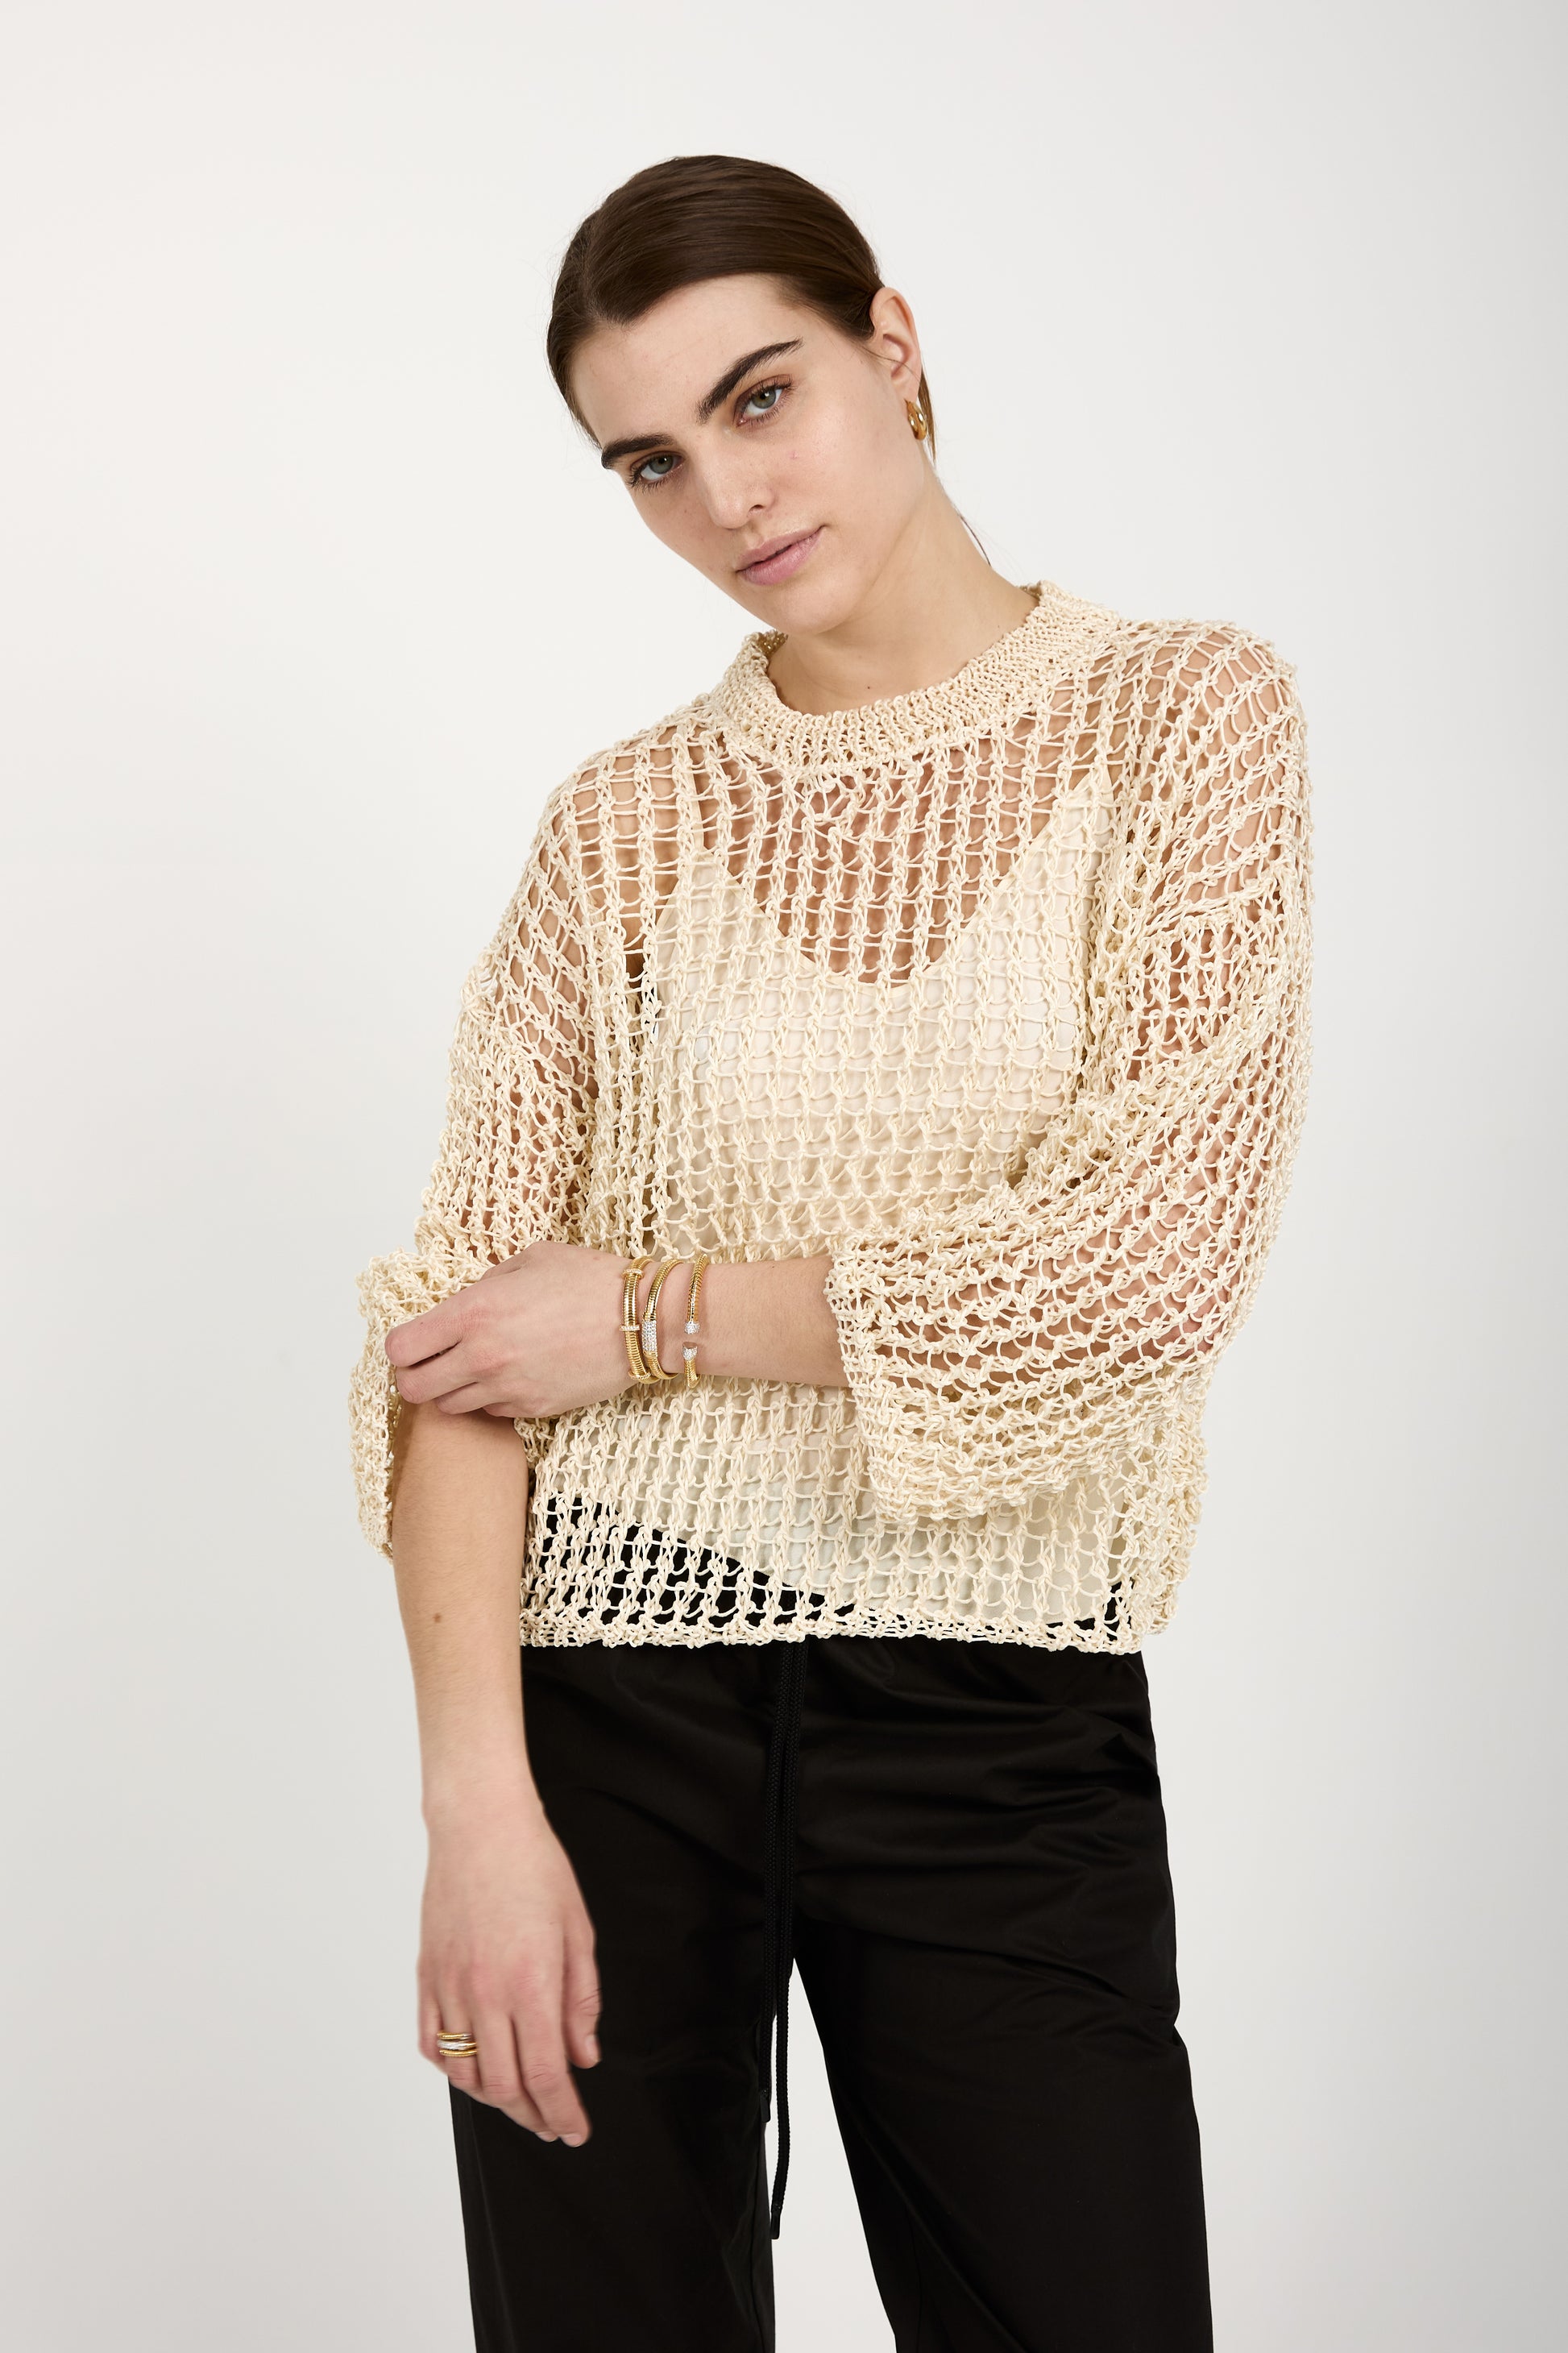 GENTRYPORTOFINO Silk Knit Sweater in Avorio